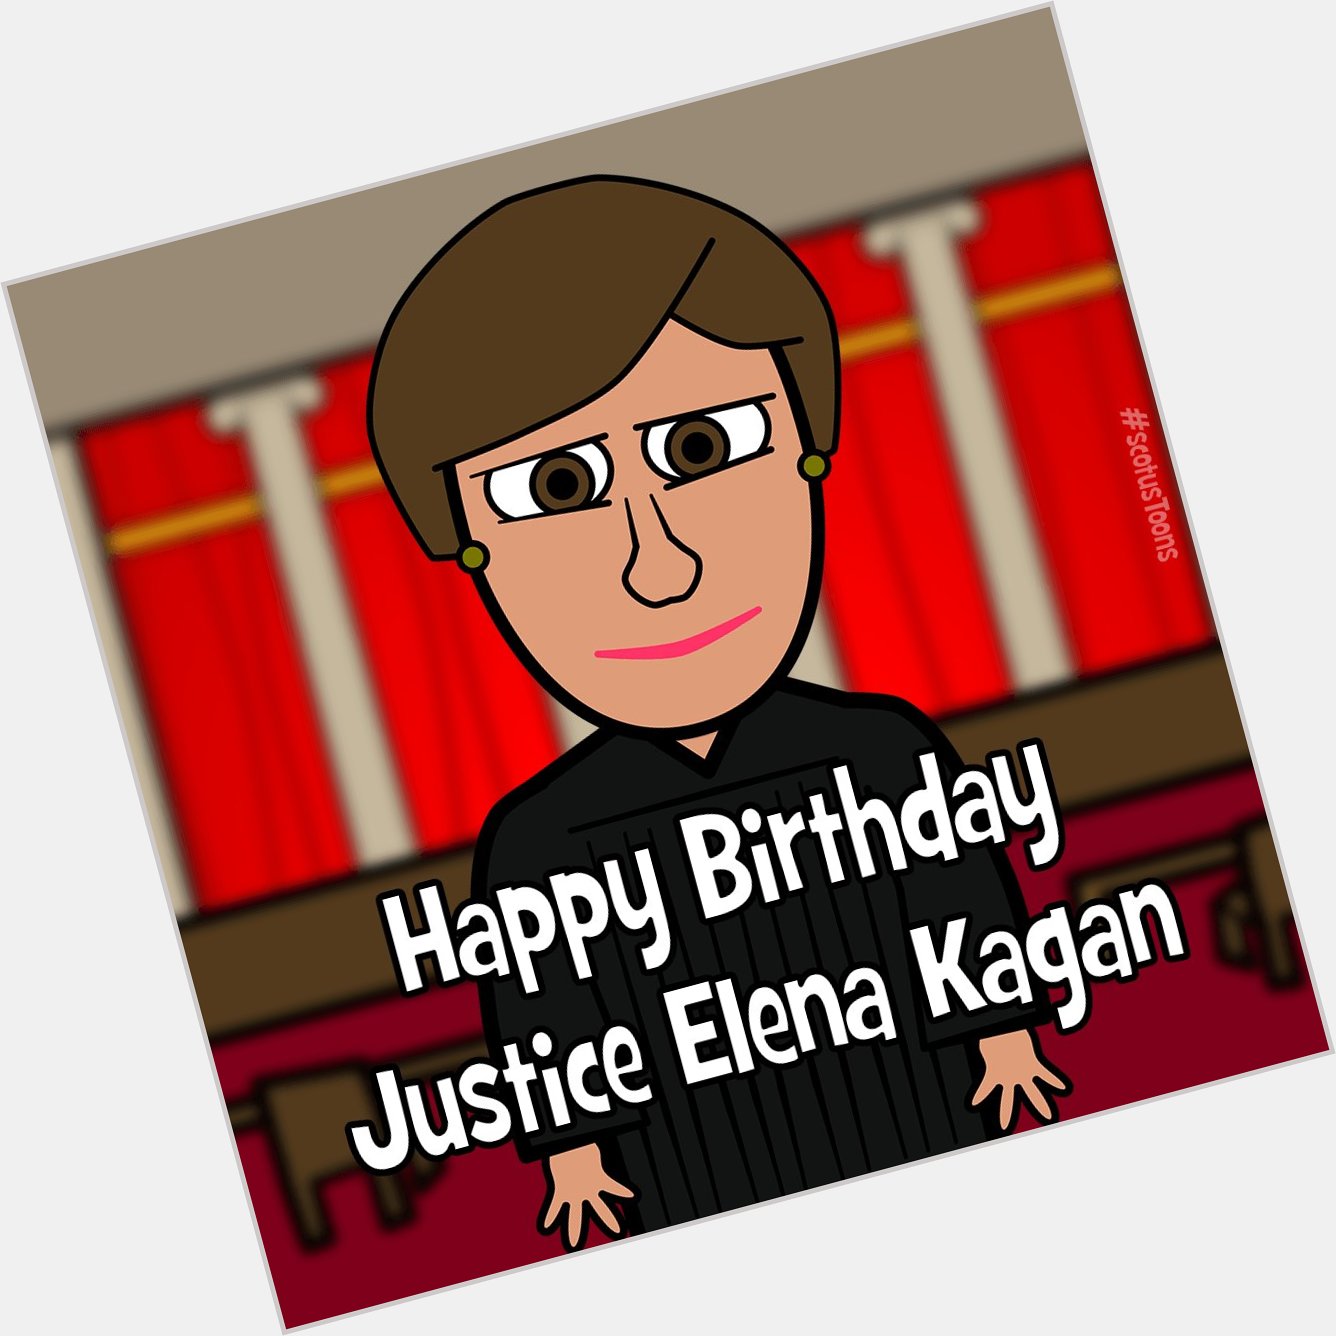 Happy Birthday Justice Elena Kagan!     